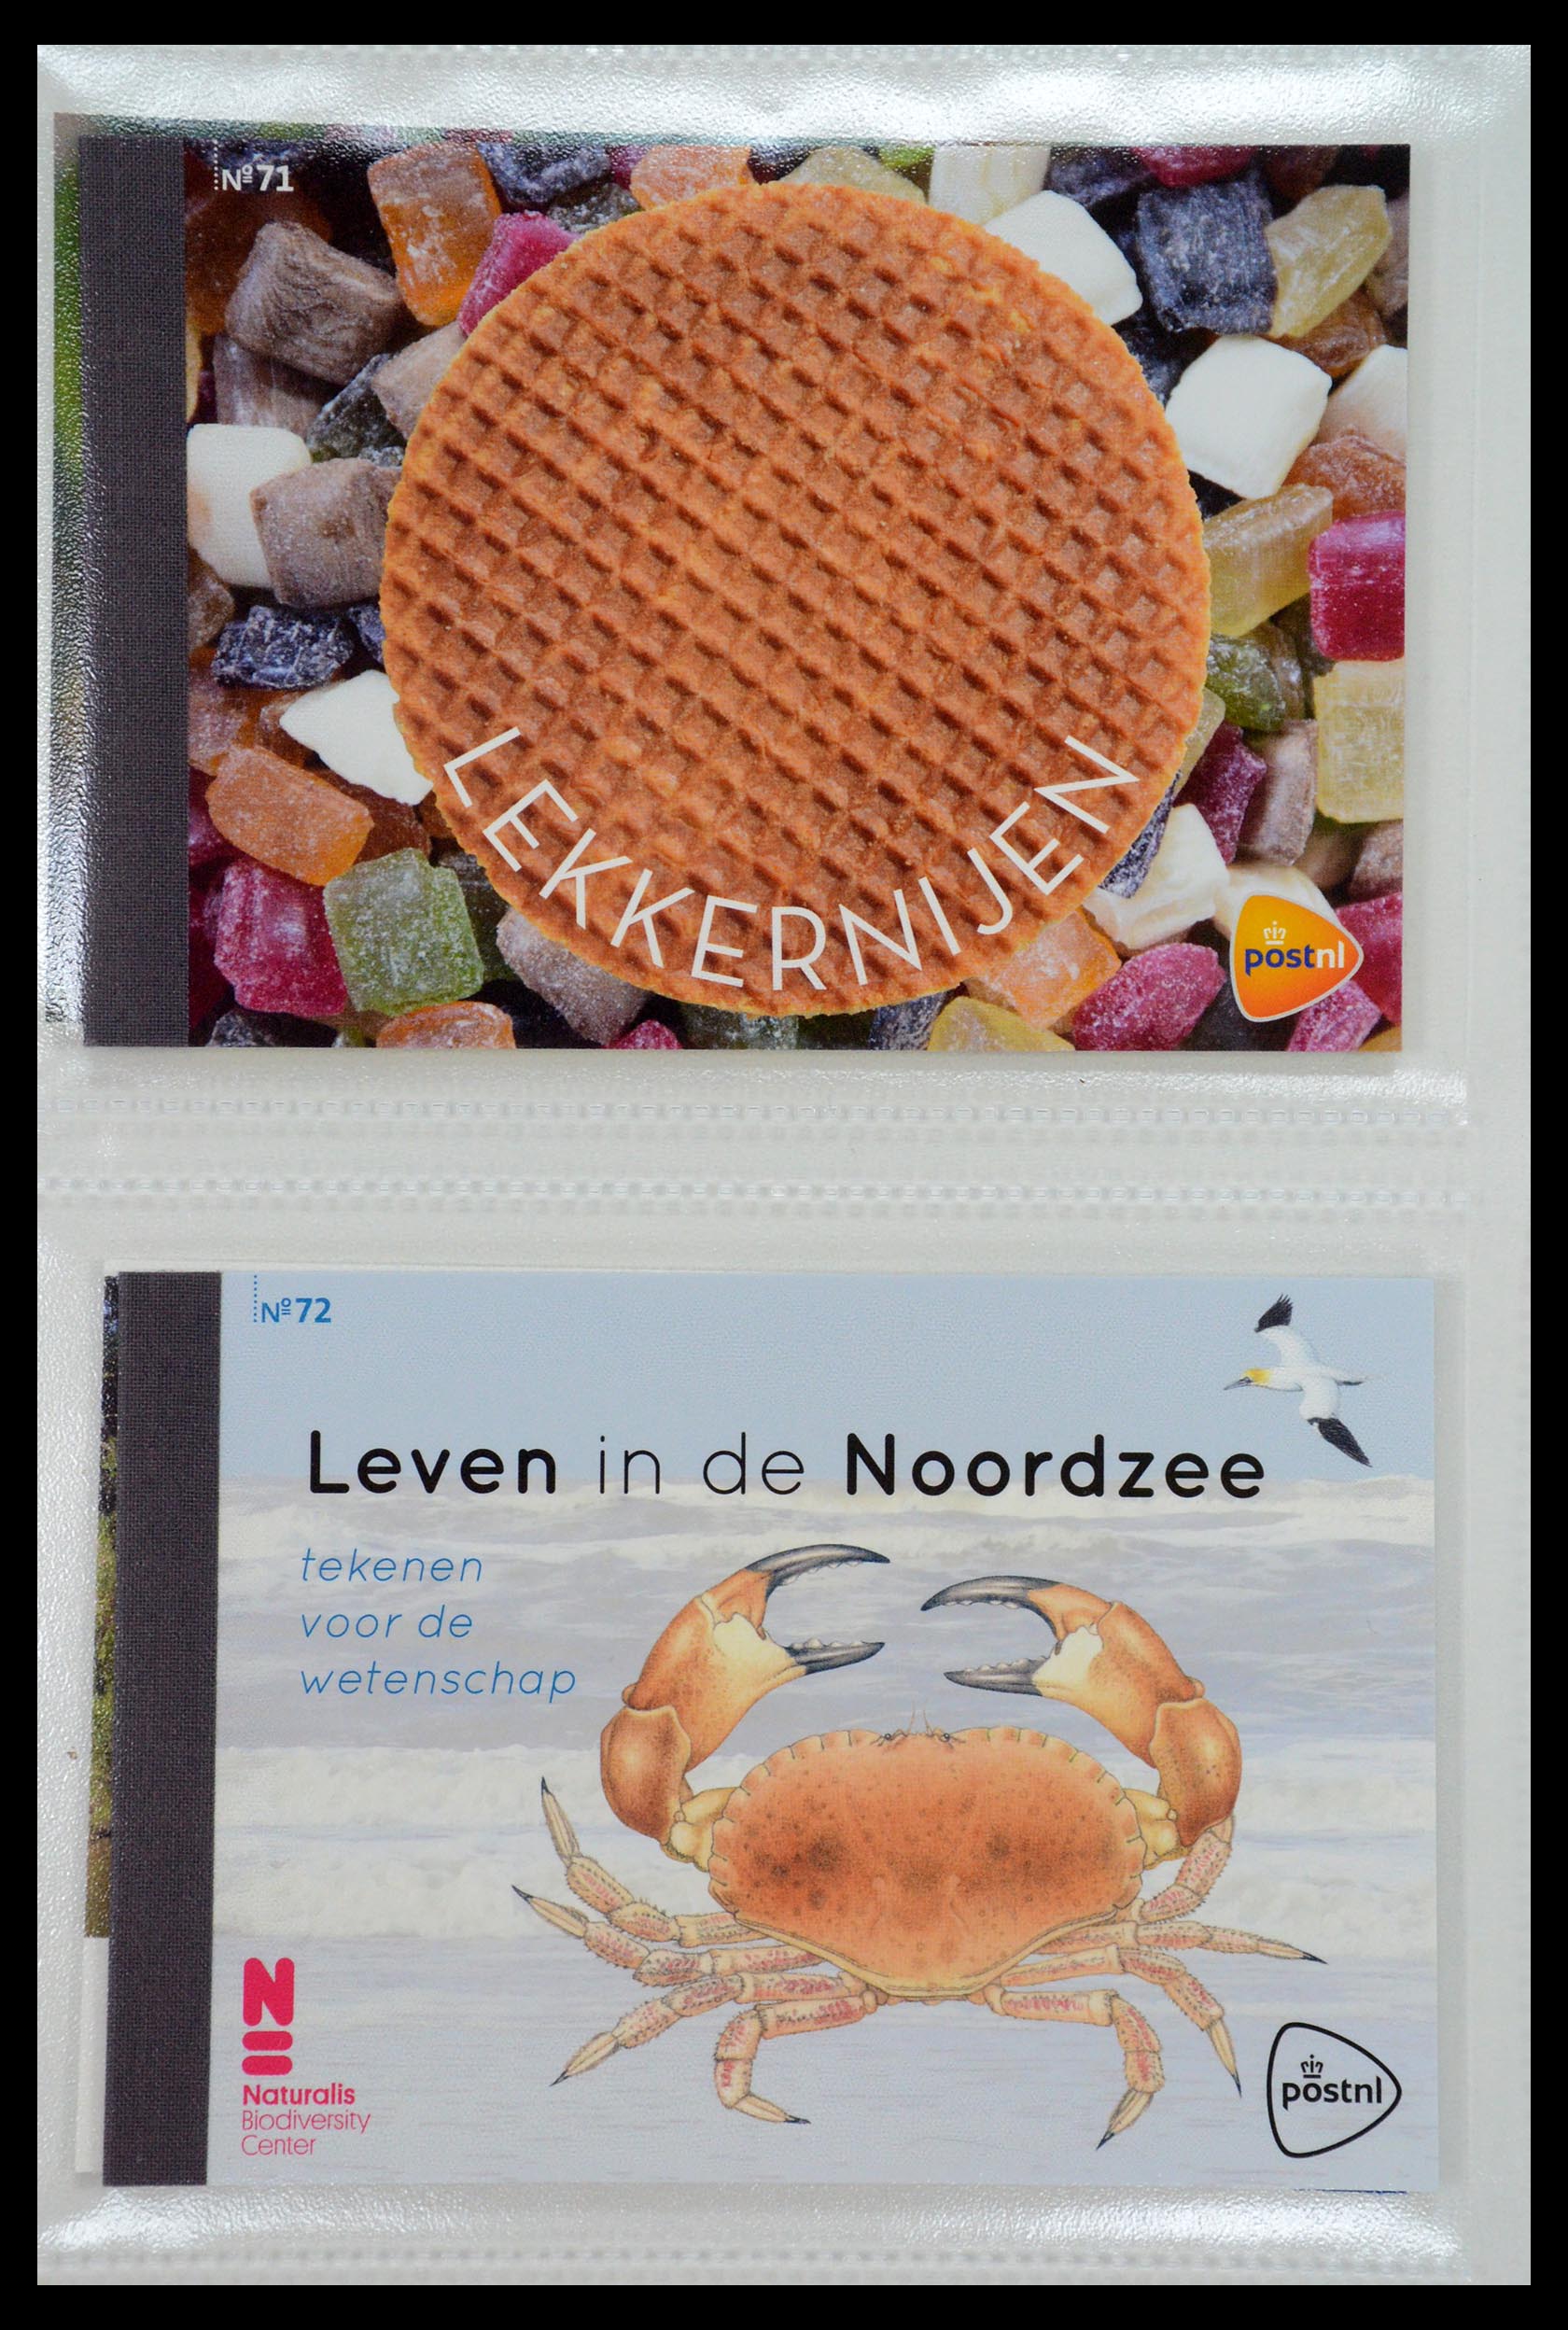 35148 036 - Stamp Collection 35148 Netherlands prestige booklets 2003-2019.